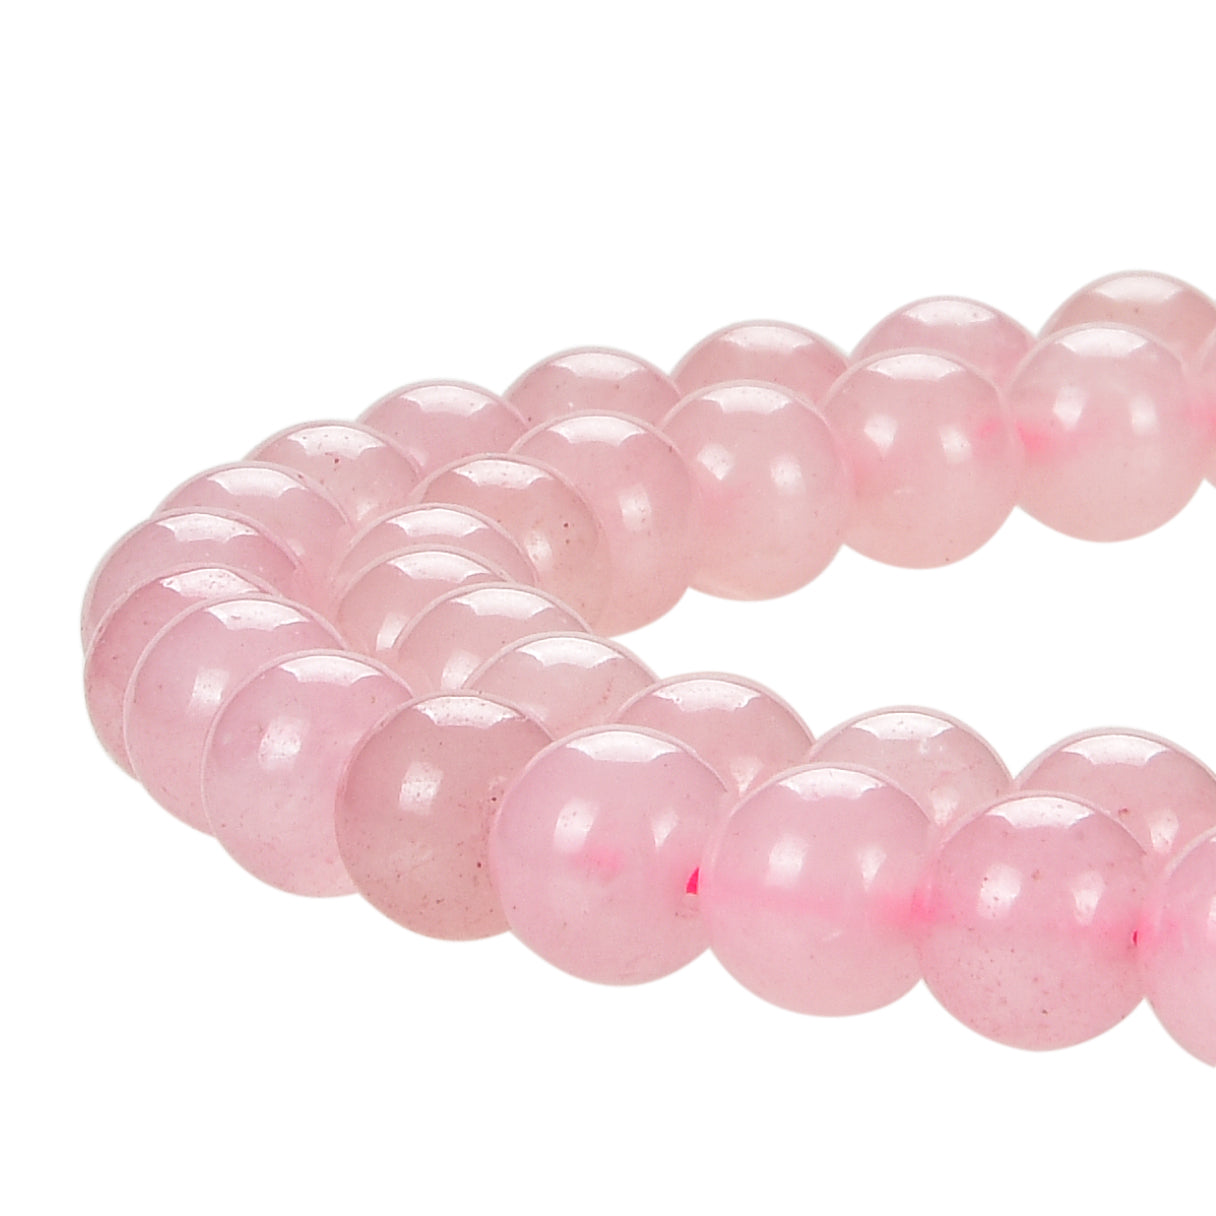 Rose Quartz Gemstone Beads Round